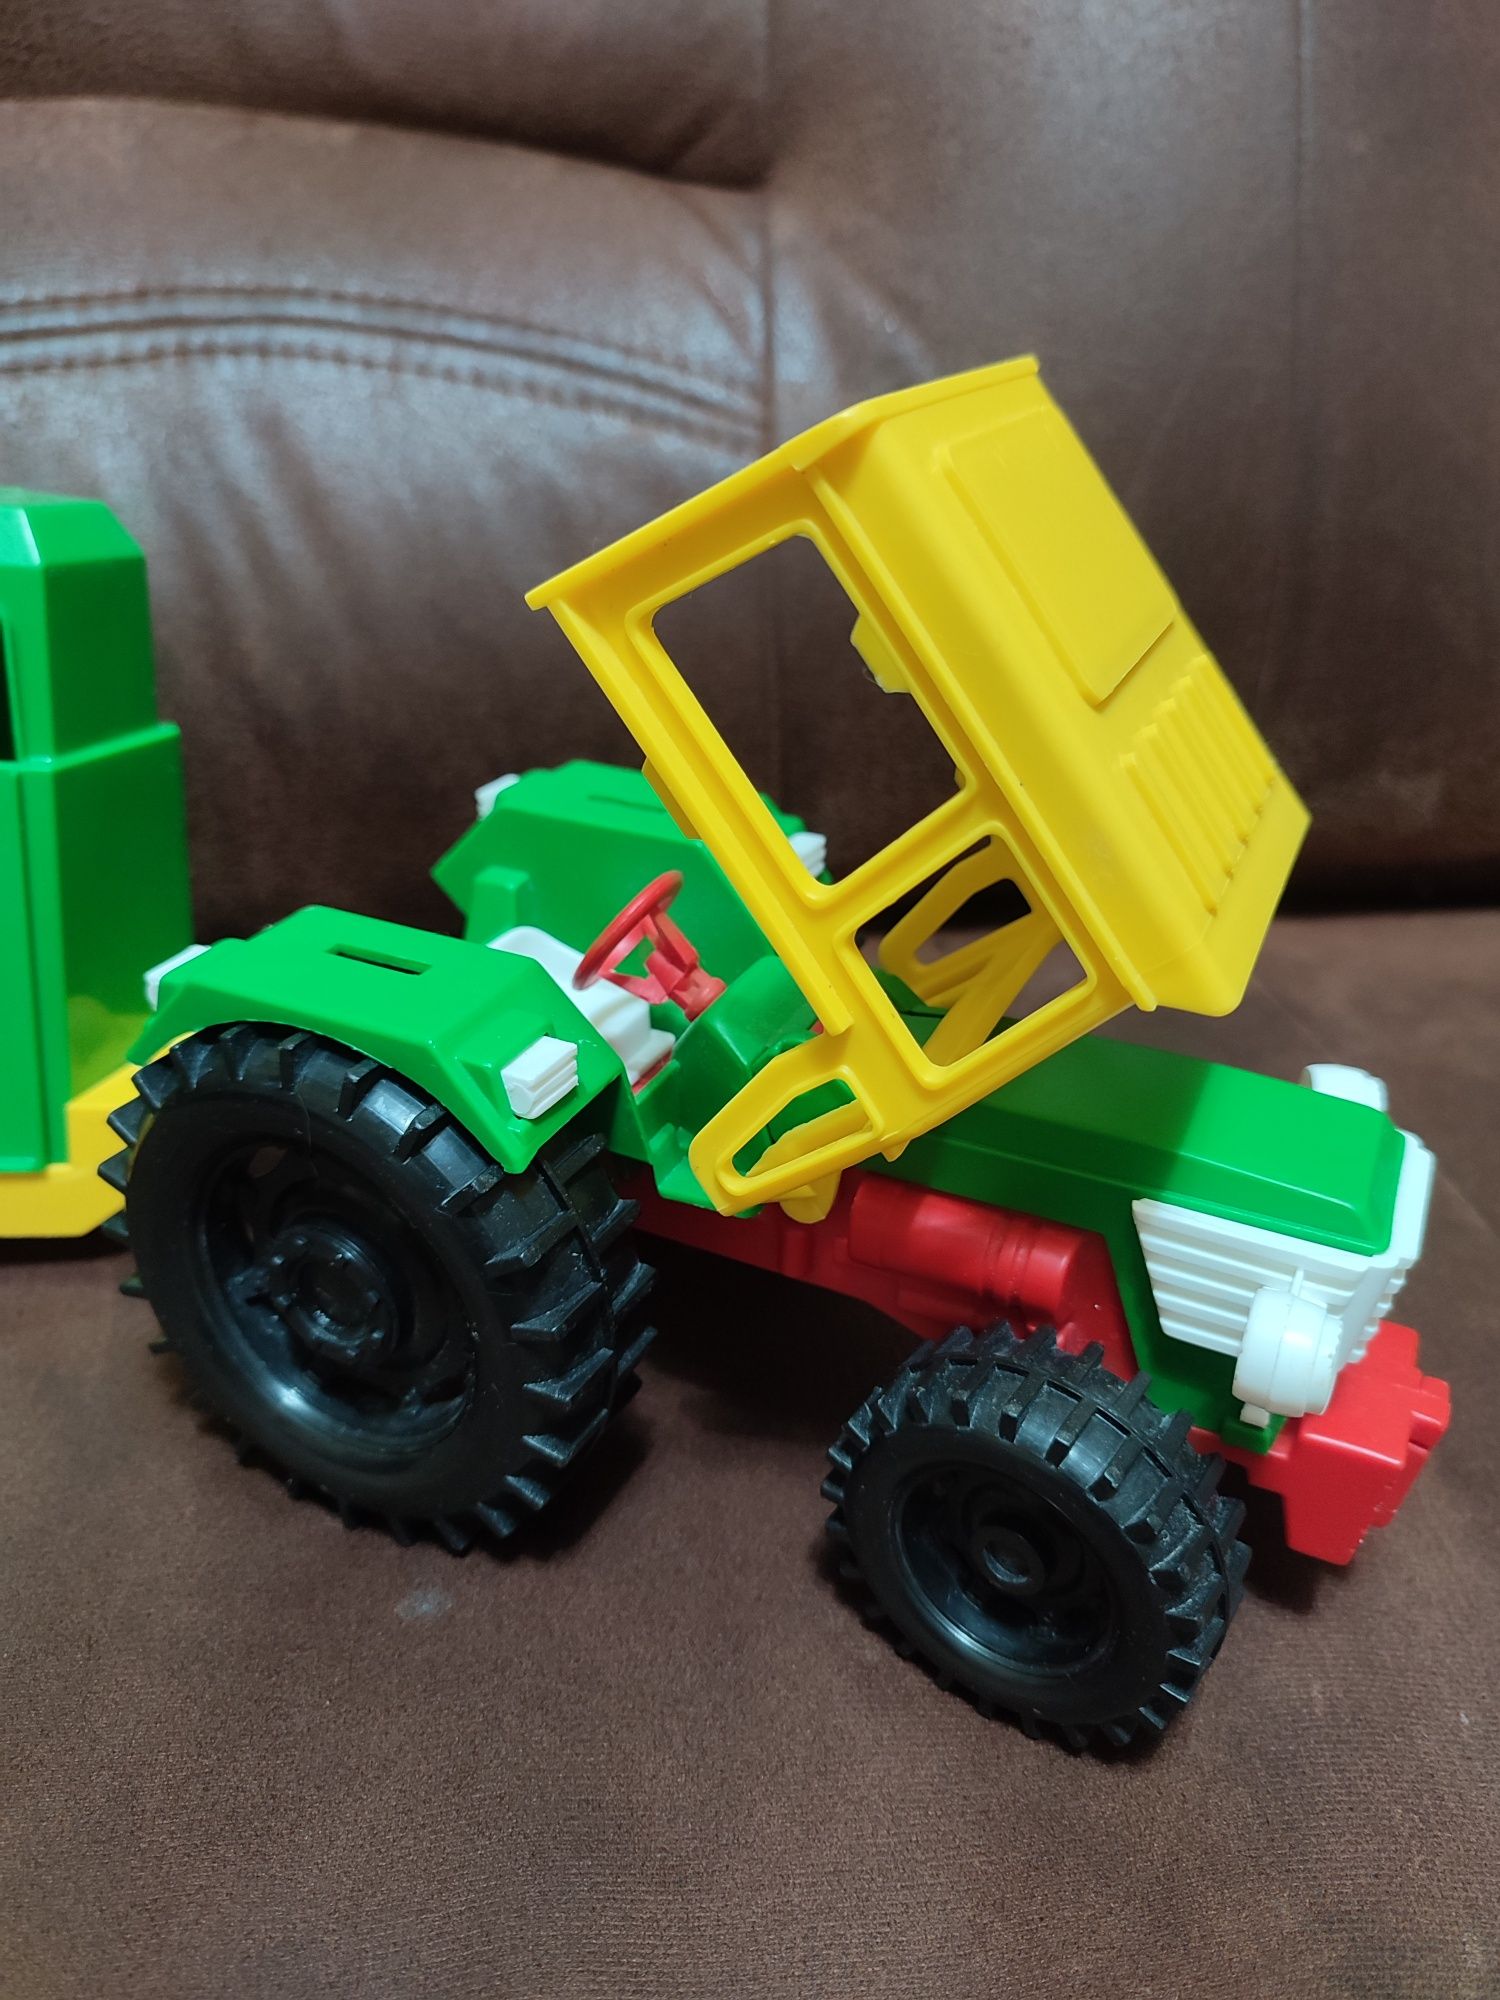 Детский игрушечный трактор с прицепом